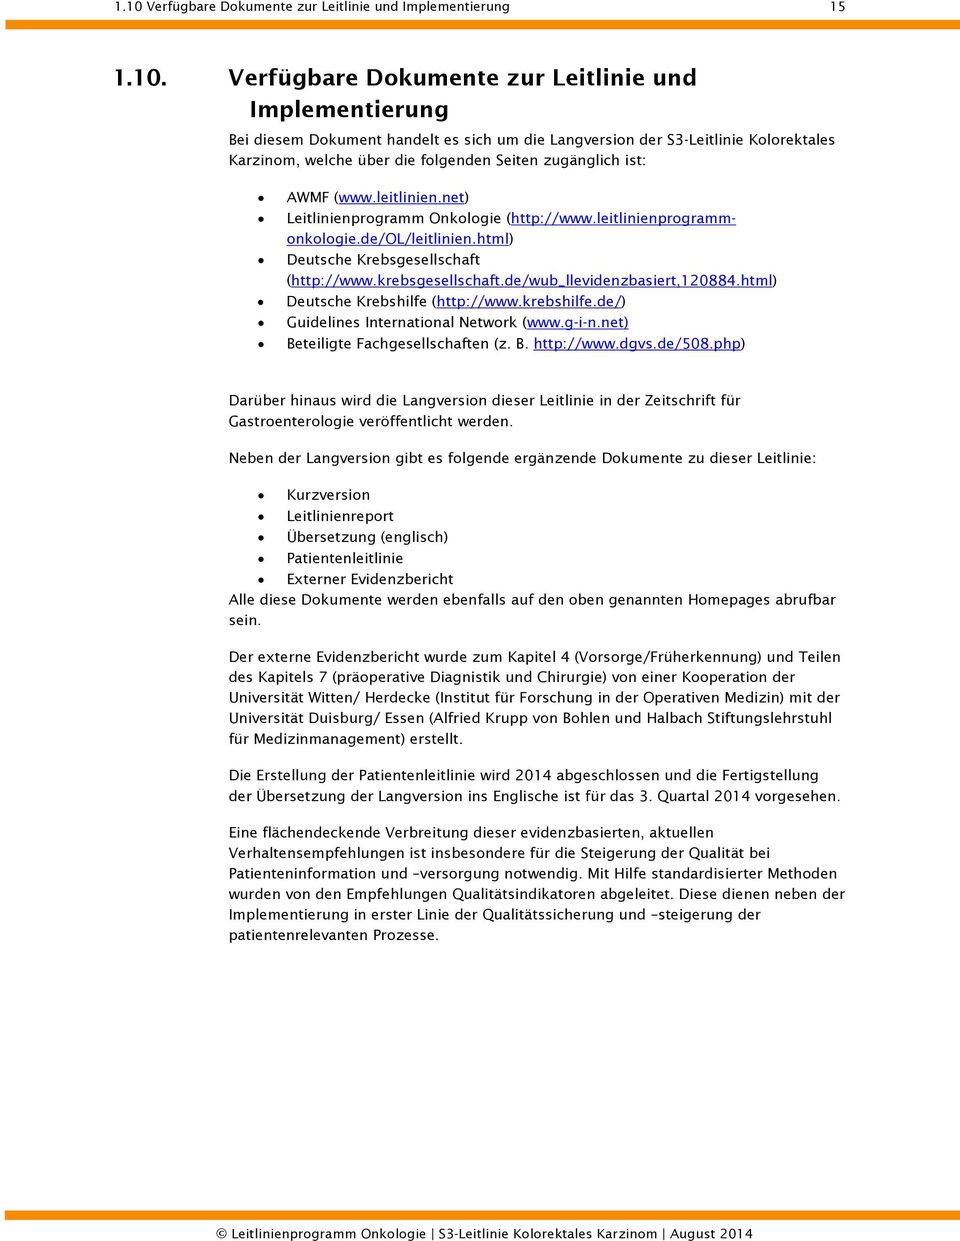 html) Deutsche Krebsgesellschaft (http://www.krebsgesellschaft.de/wub_llevidenzbasiert,120884.html) Deutsche Krebshilfe (http://www.krebshilfe.de/) Guidelines International Network (www.g-i-n.